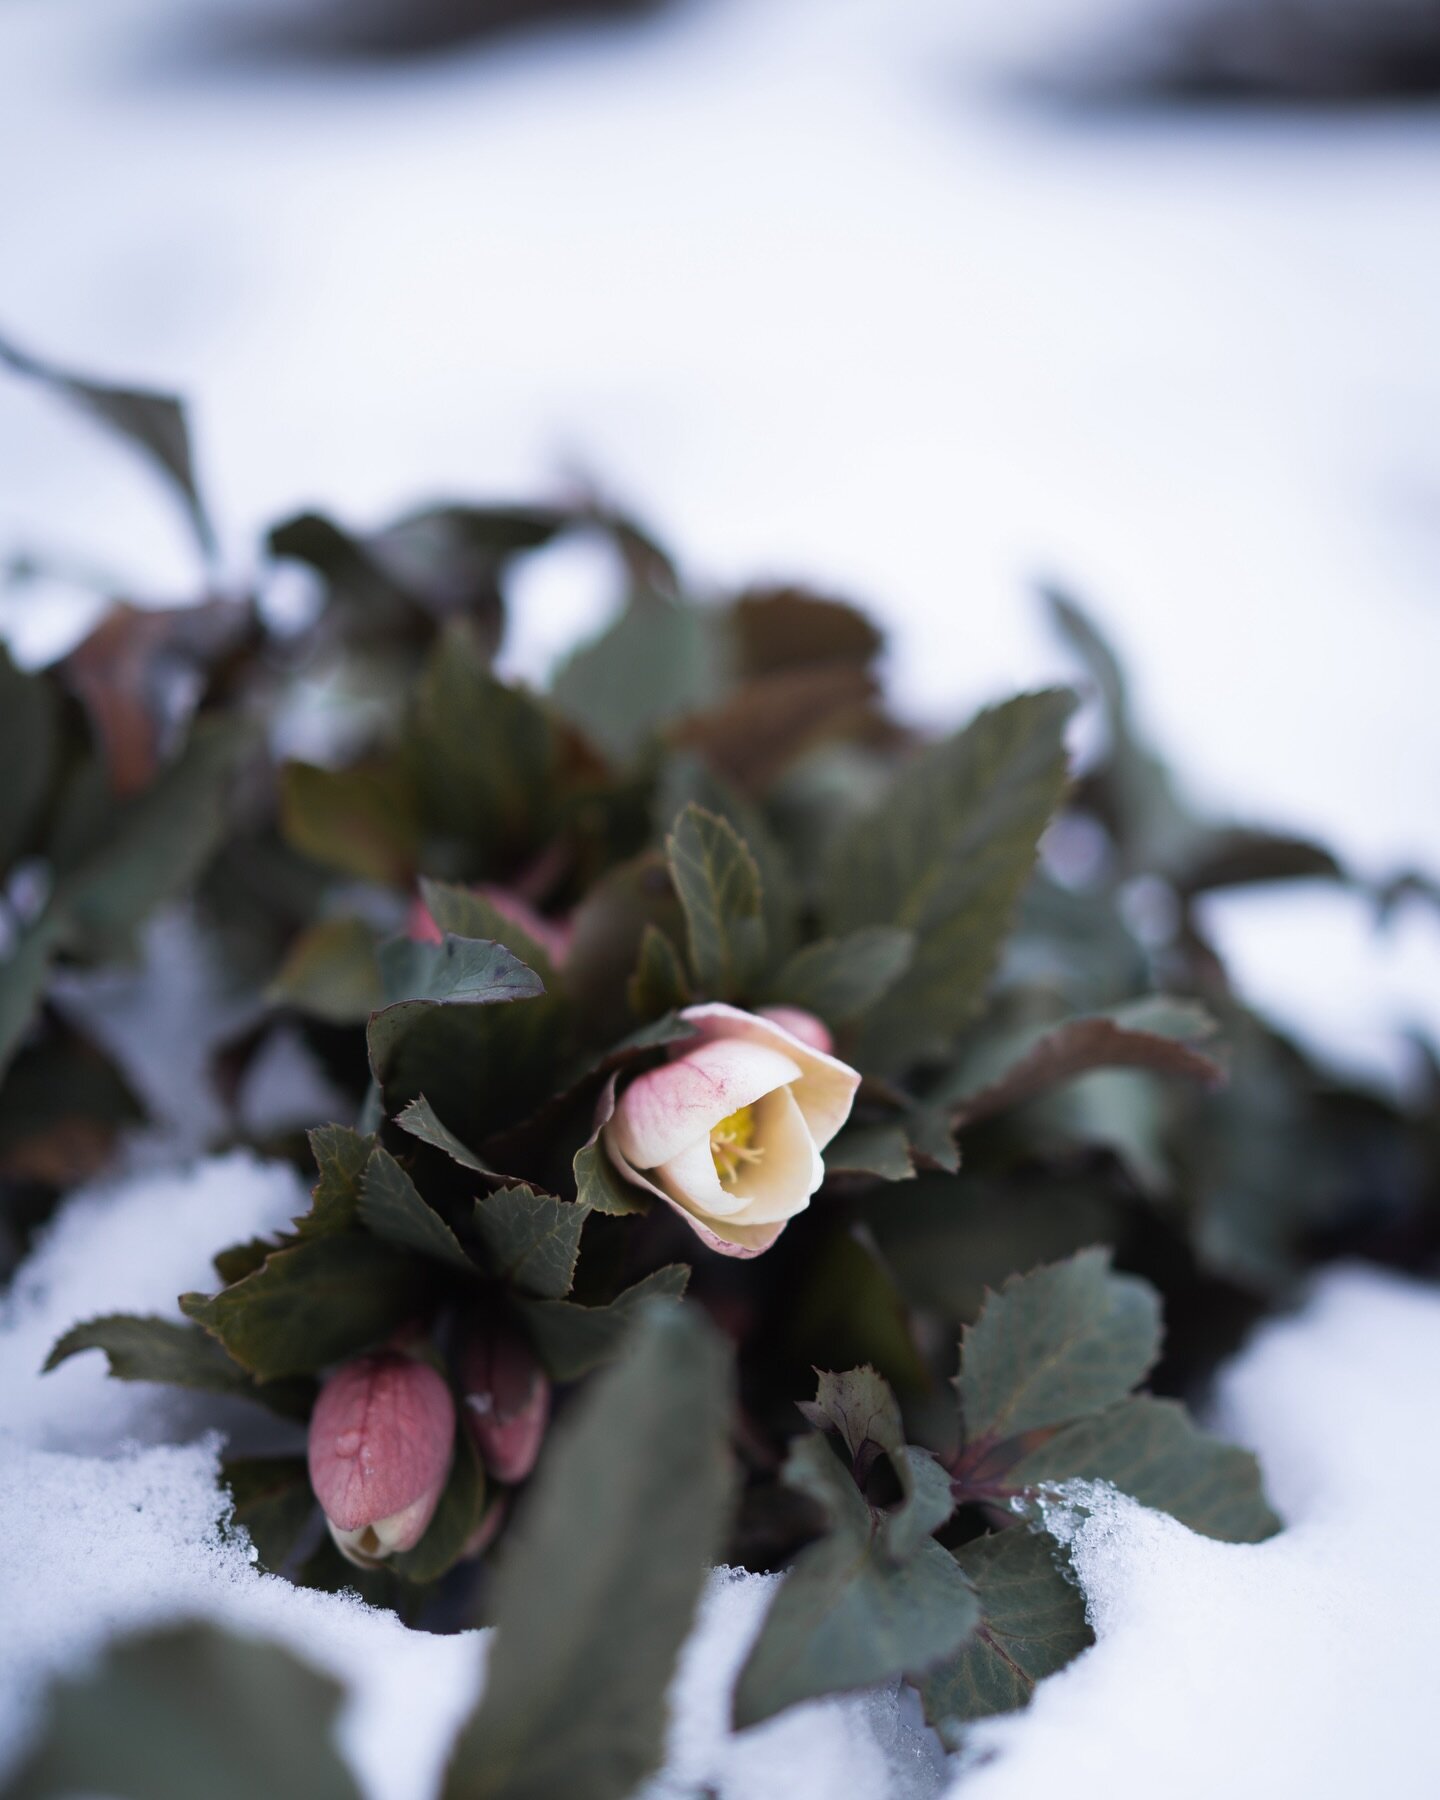 昨夜から降り続いた雪はあっという間に数十センチに達しました。これらの雪は、大地を優しく包み込み、宿根草の繊細な生命を守ります。
雪を纏ったクリスマスローズたちはその布団の中でどこか嬉しそうです🧑&zwj;🌾

#美しい花を美しく育てる 
#yariflowerfarm 

#クリスマスローズ #helleborus 
#花 #フラワー #花屋 #花のある暮らし #花のある生活 #flower #flowerstagram #flowerslovers #flowerpic #flowerof